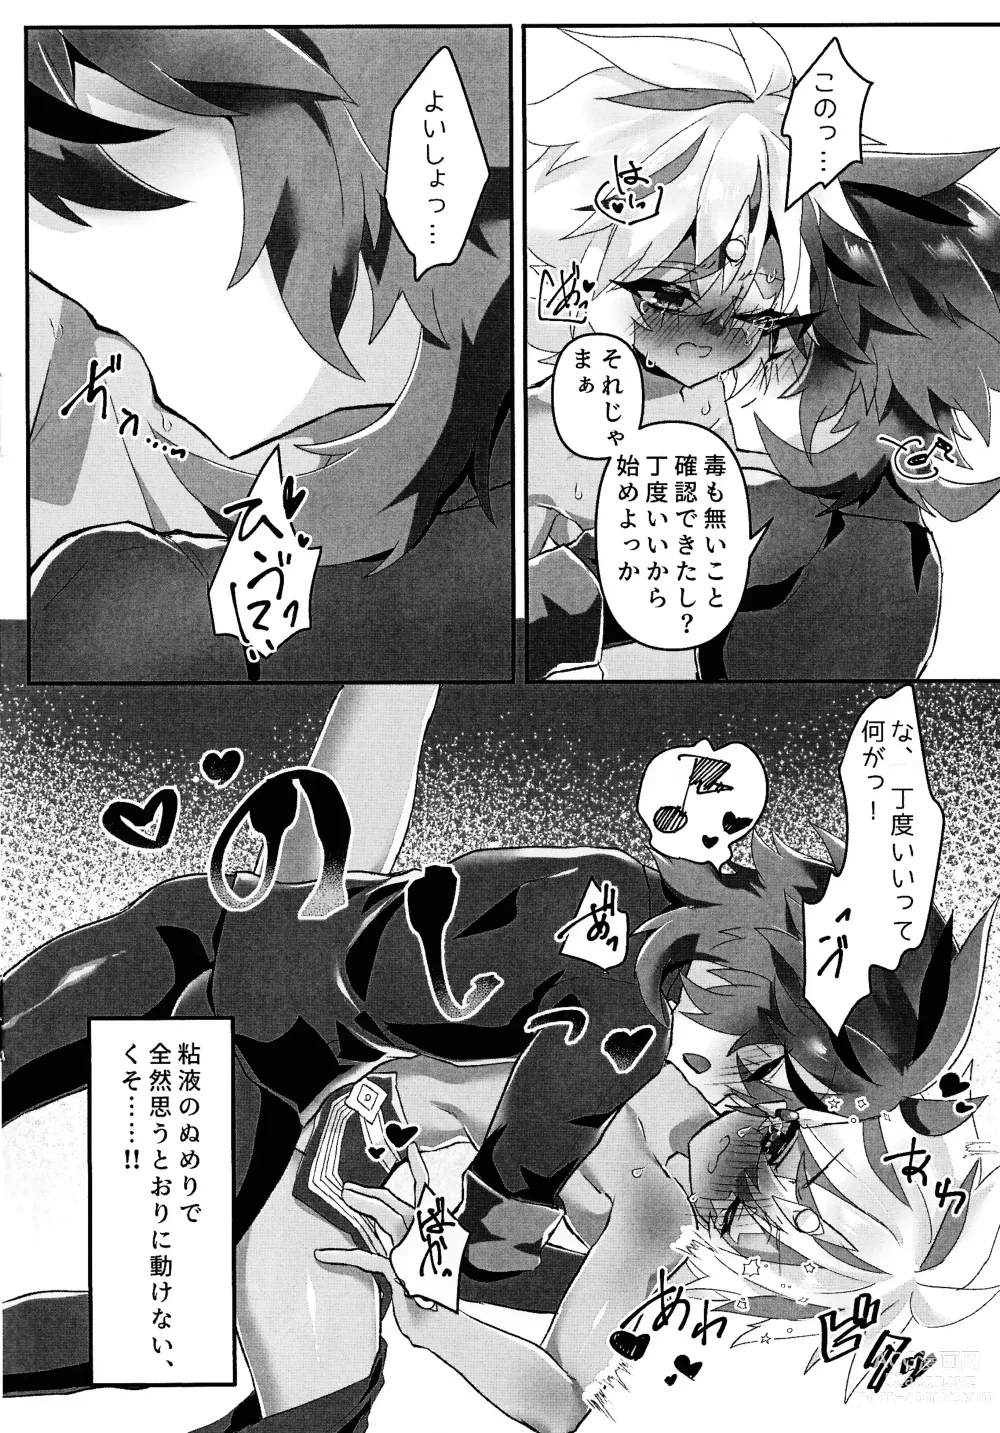 Page 9 of doujinshi Toru ● sozai wa o konomi de.